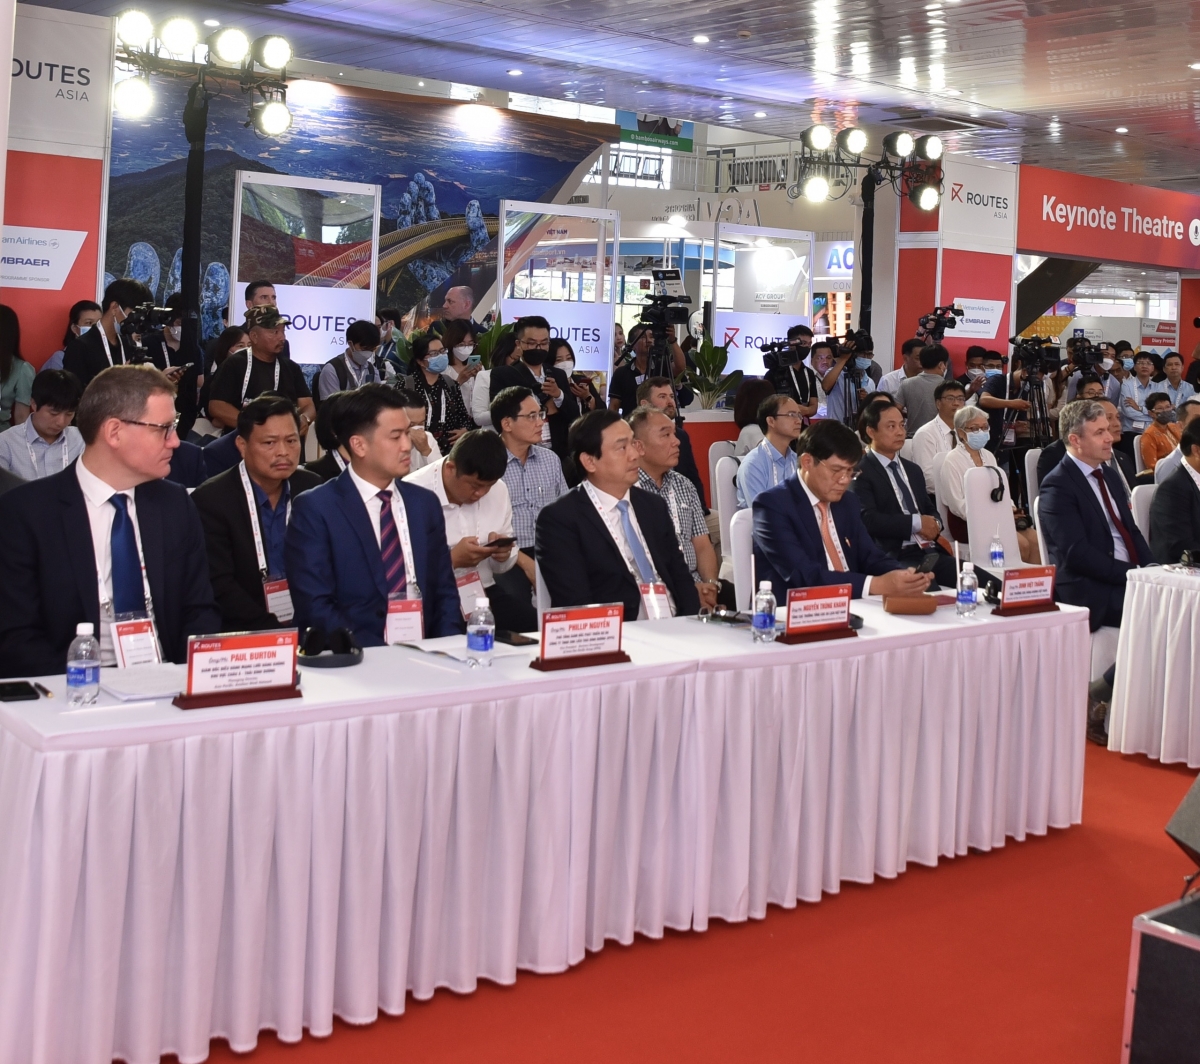 Các đại biểu tham dự Diễn đàn phát triển đường bay châu Á 2022 (Routes Asia)